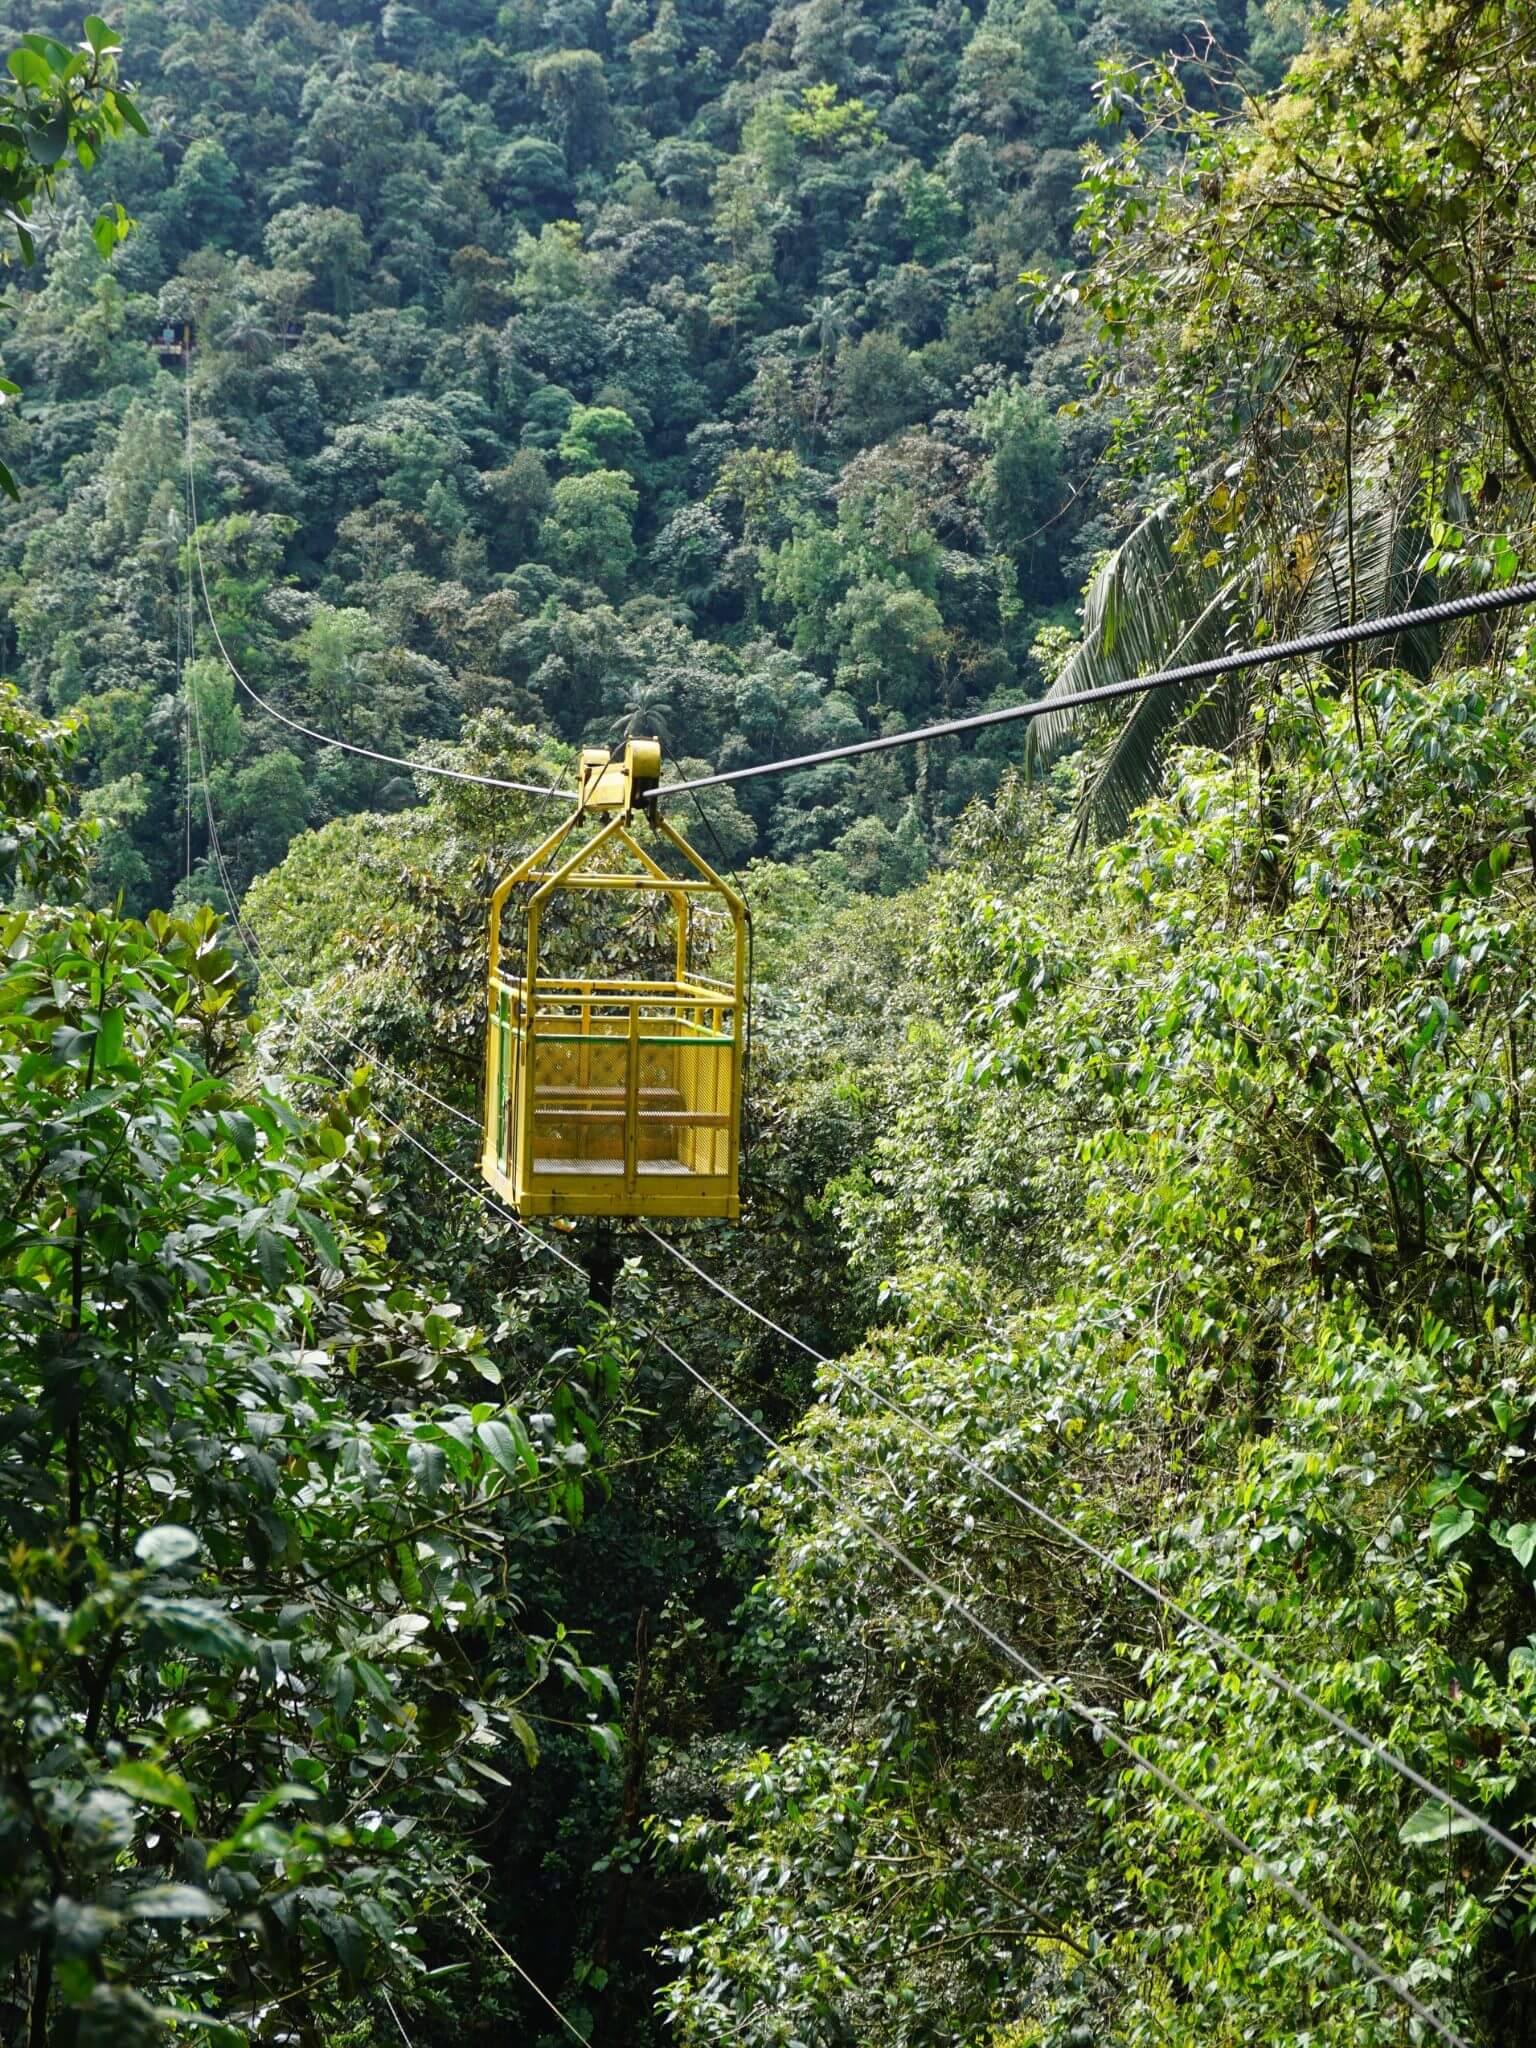 Tarabita de Montaña Cable Car, Mindo Cloudforest